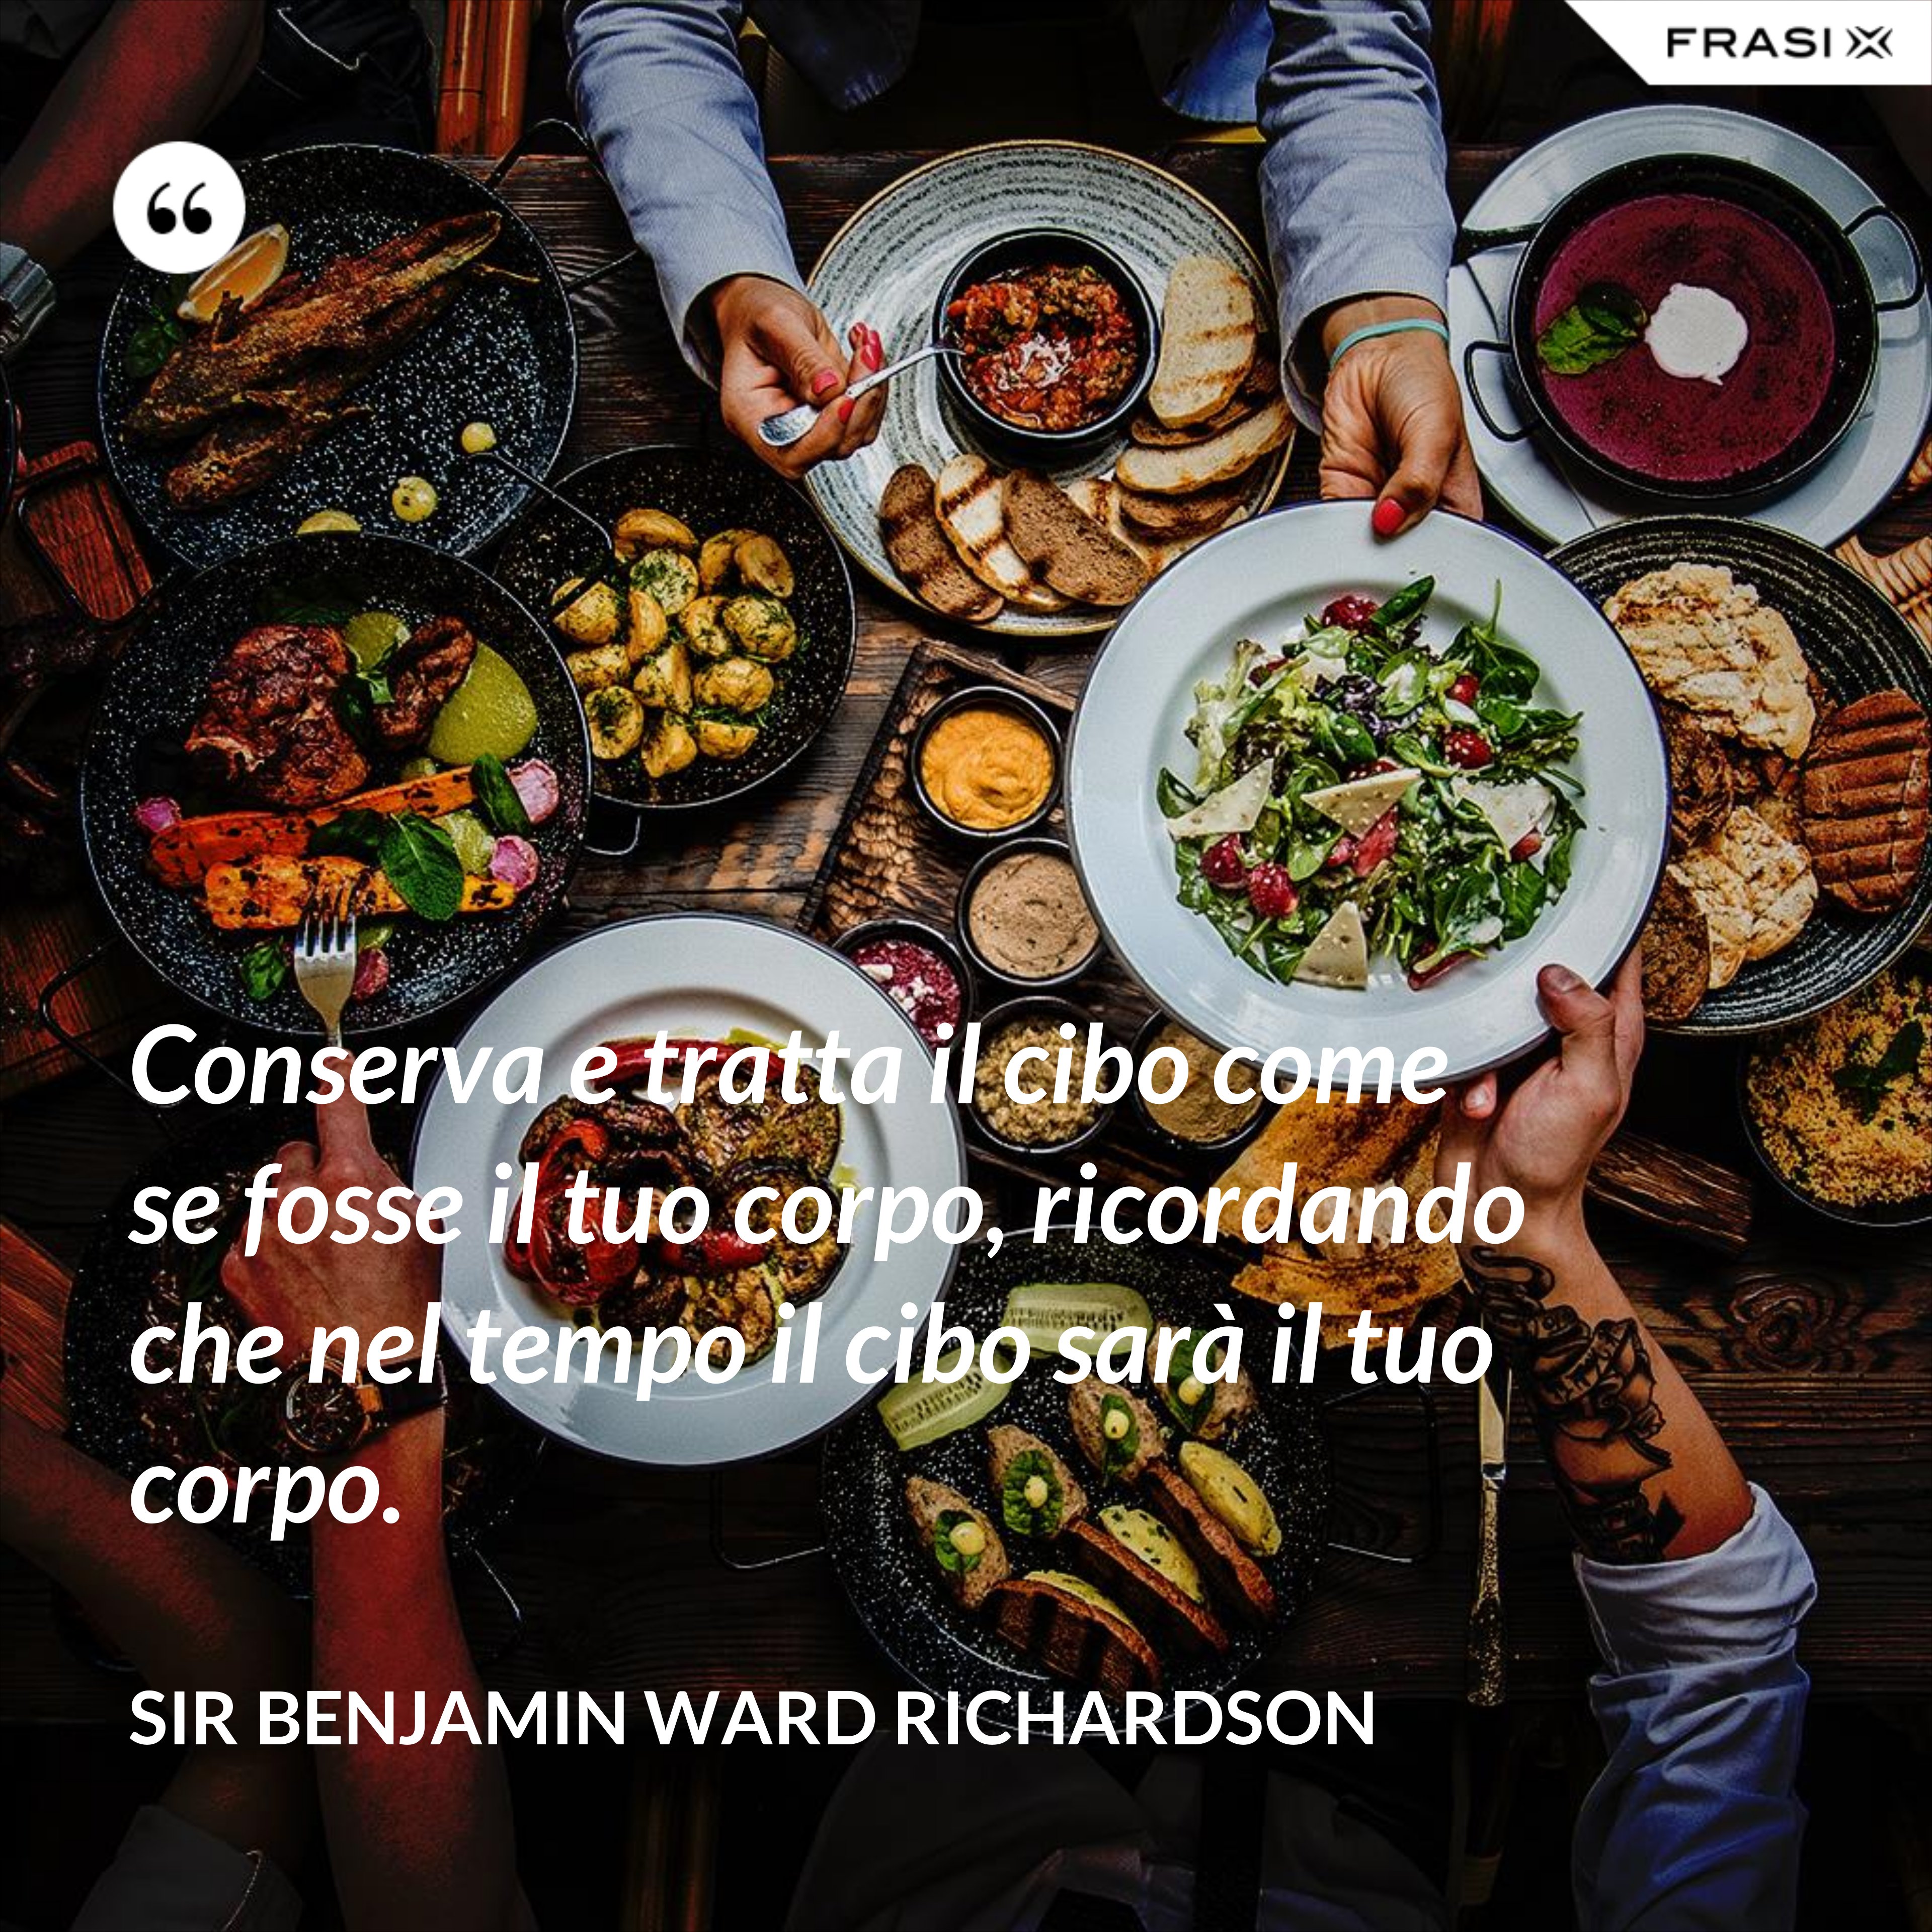 Conserva e tratta il cibo come se fosse il tuo corpo, ricordando che nel tempo il cibo sarà il tuo corpo. - Sir Benjamin Ward Richardson